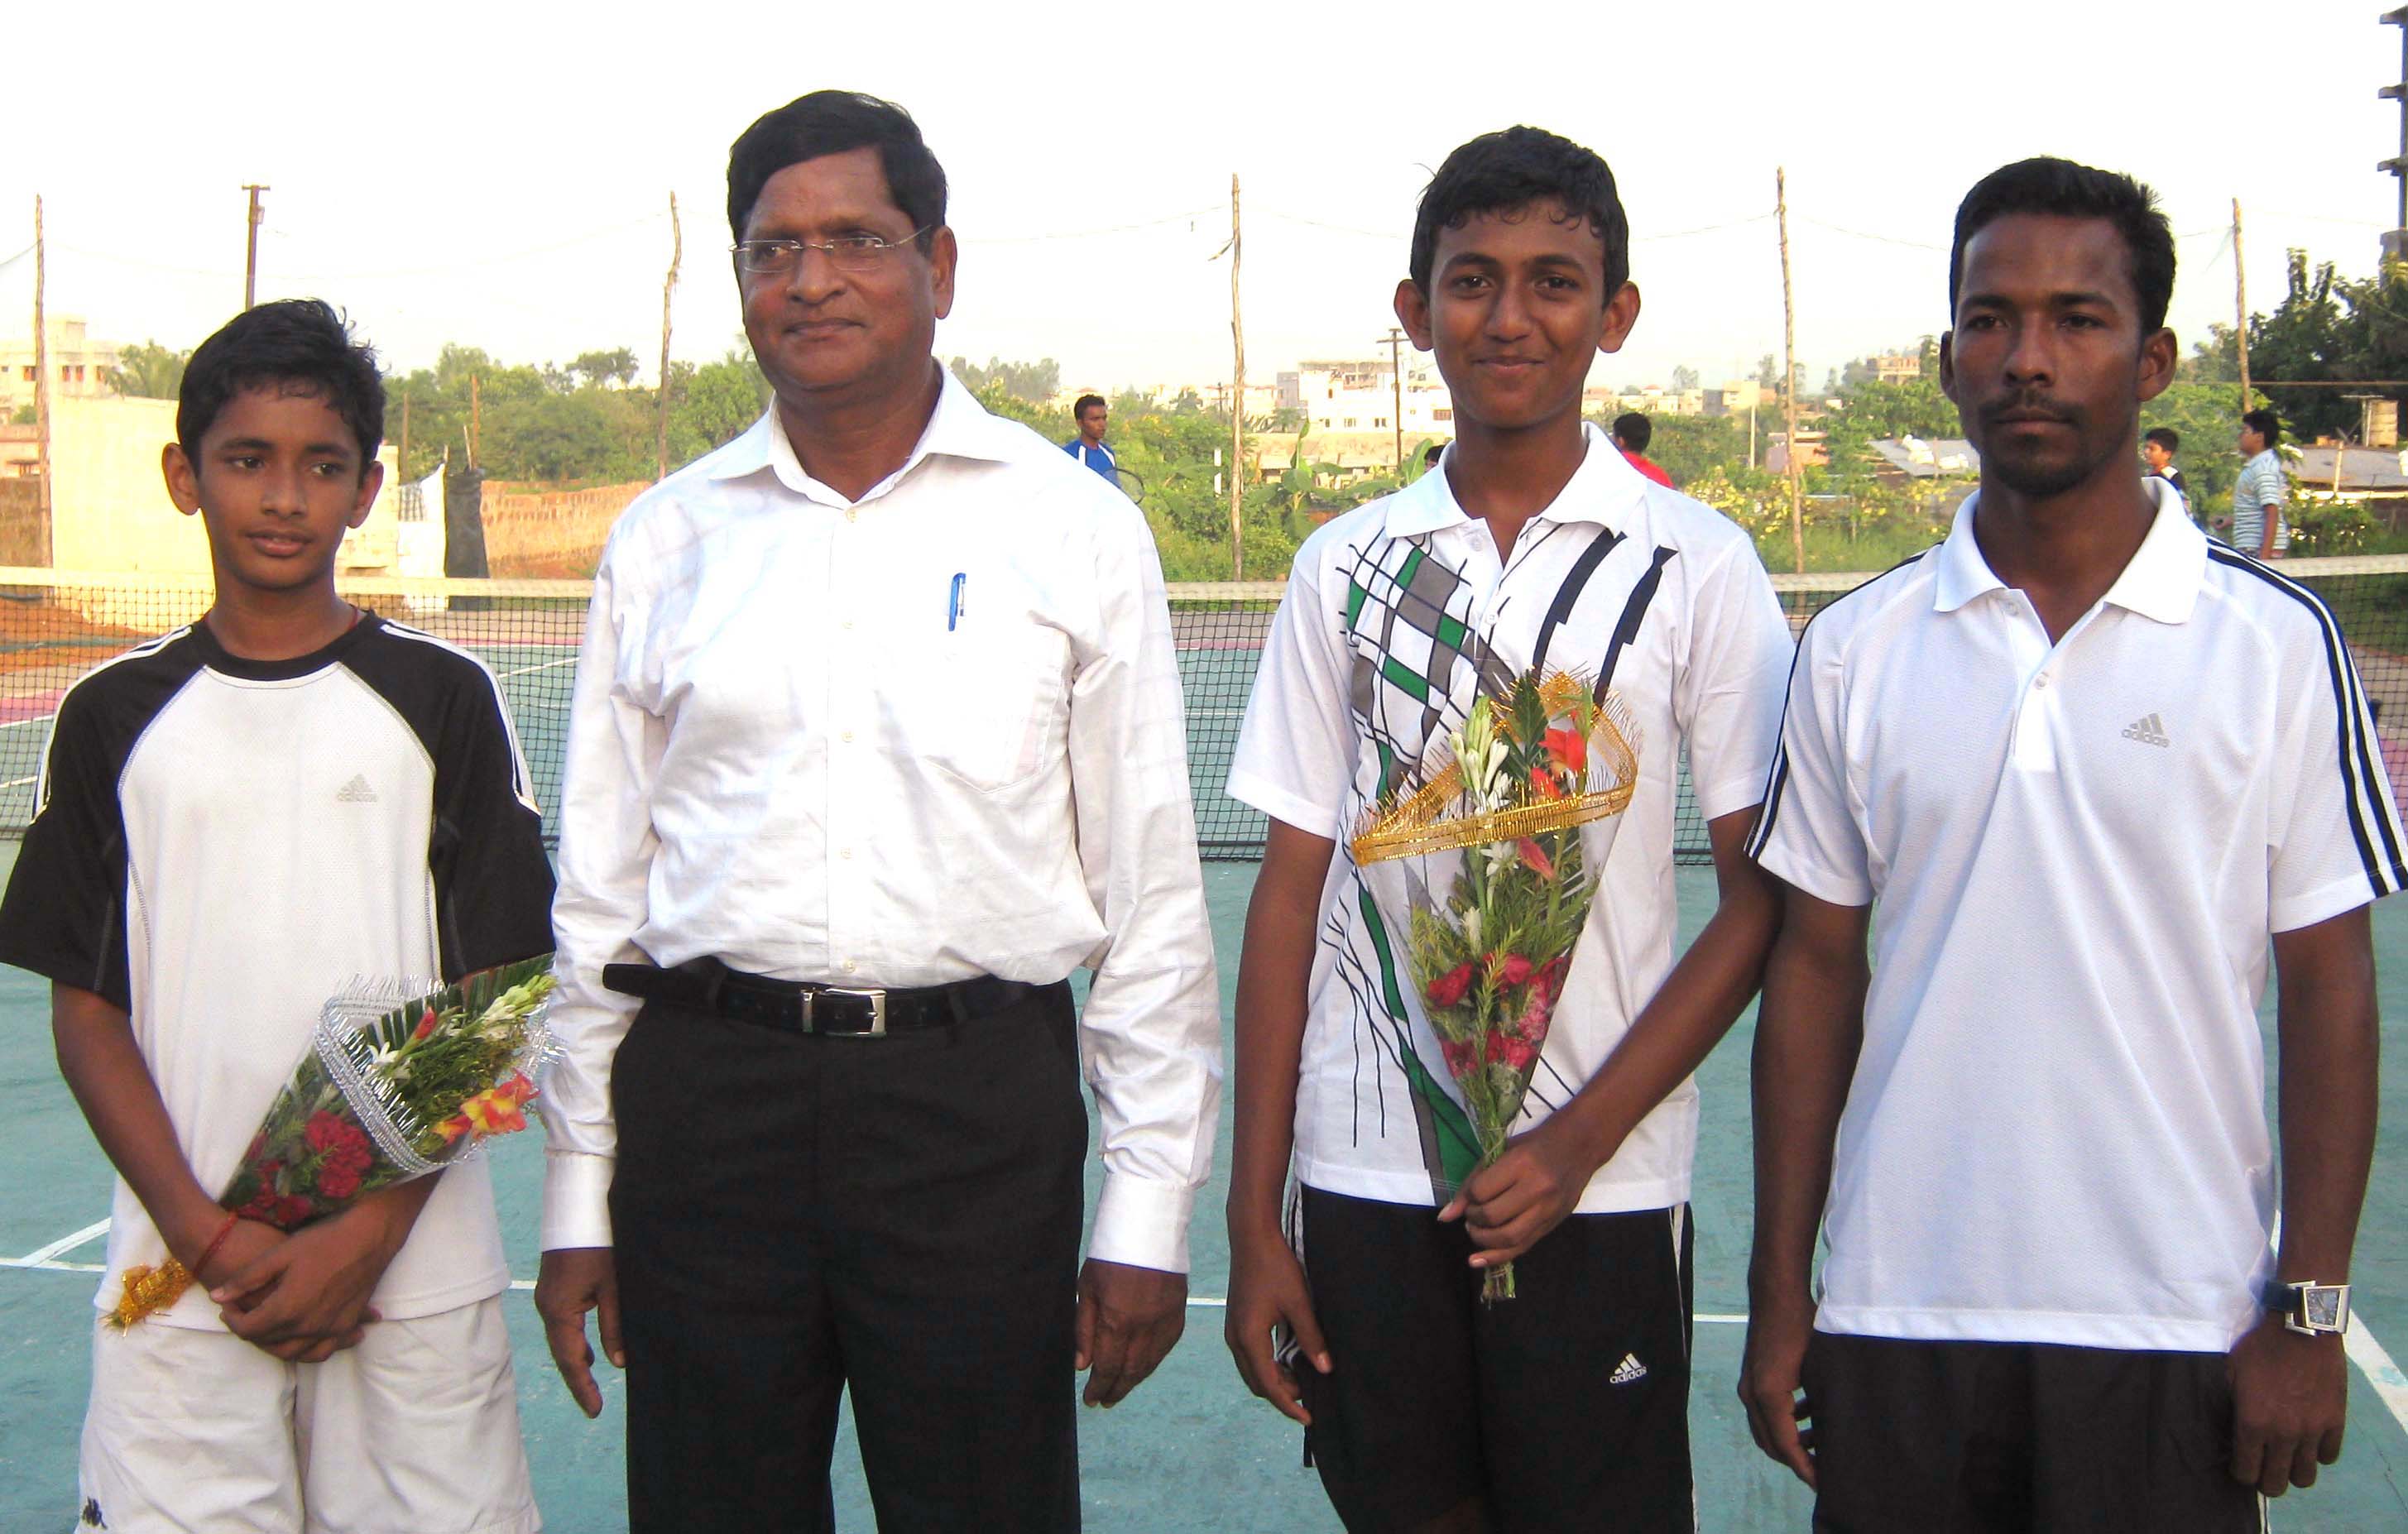 Shakti Ray, P K Patnaik, Adwithiya Patnaik and Santosh Mallik (L to R) at the launching function of Gurukul Tennis Academy in Bhubaneswar on <b>October 11, 2009.